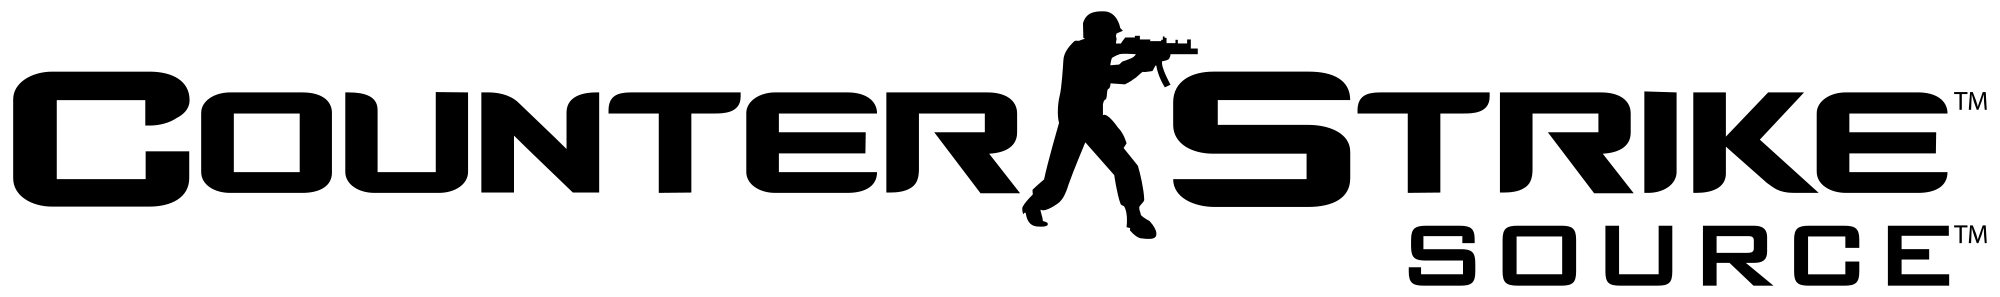 Counter-Strike Logo - LogoDix